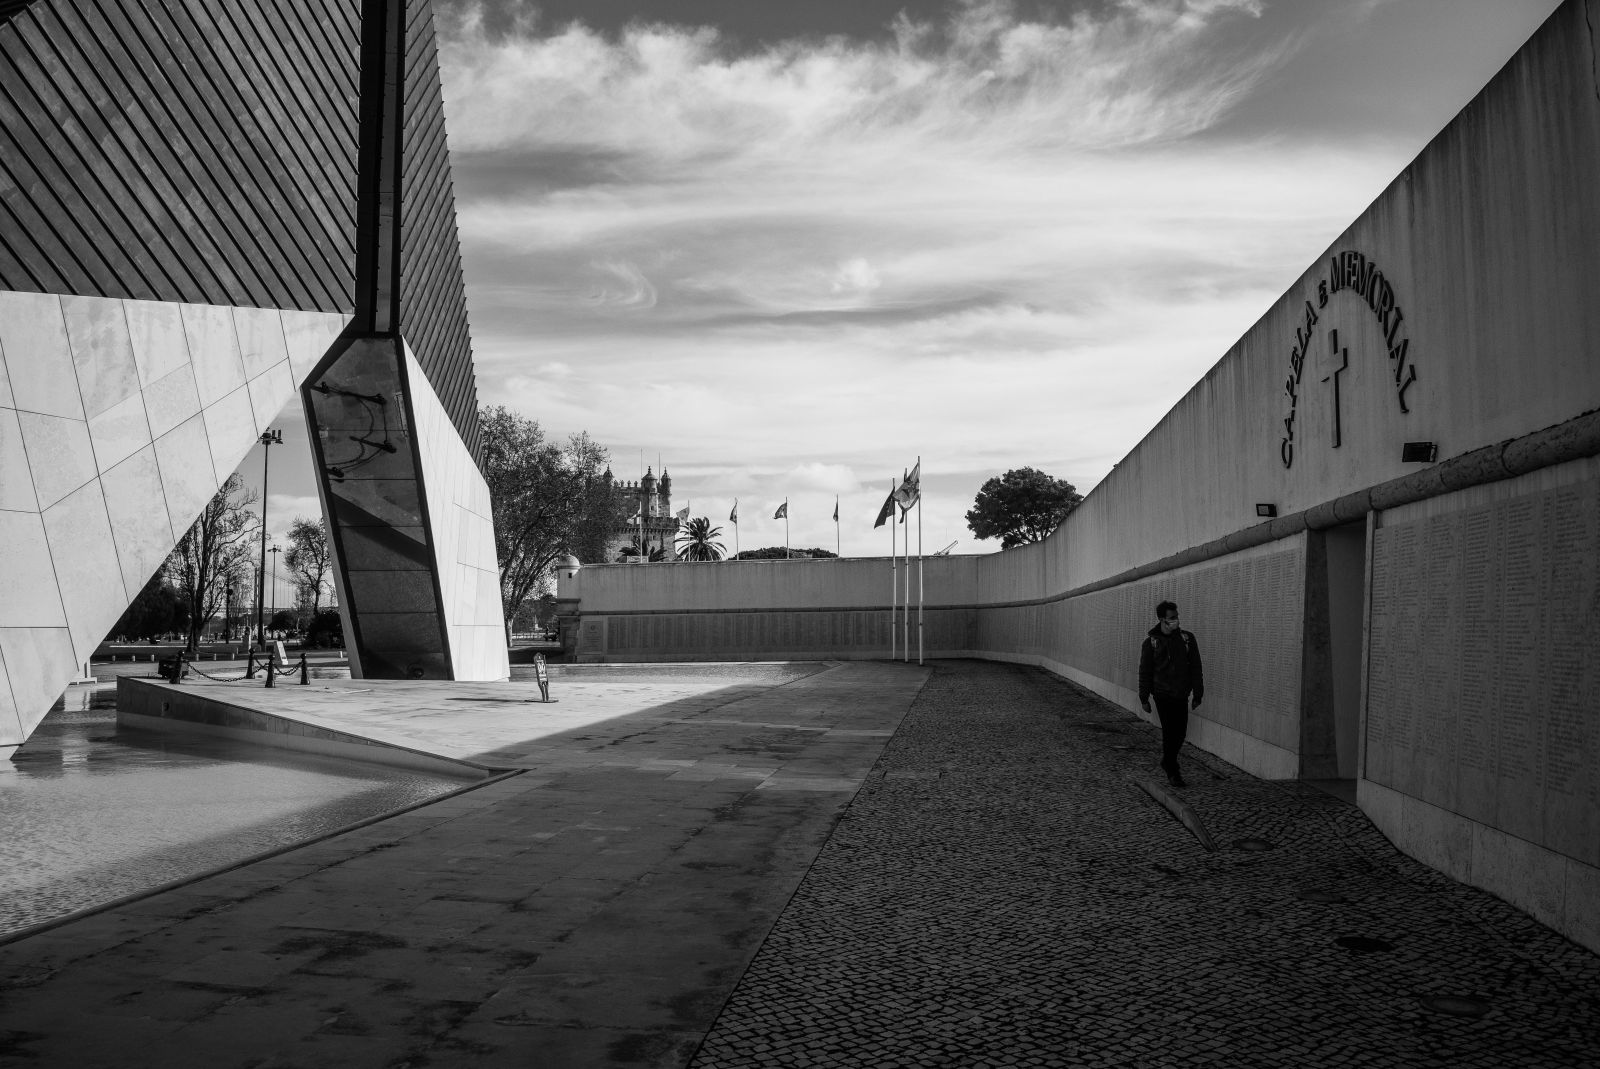 Aspetos do Monumento aos Combatentes do Ultramar, Lisboa, 2020. Foto: © Rui Sérgio Afonso